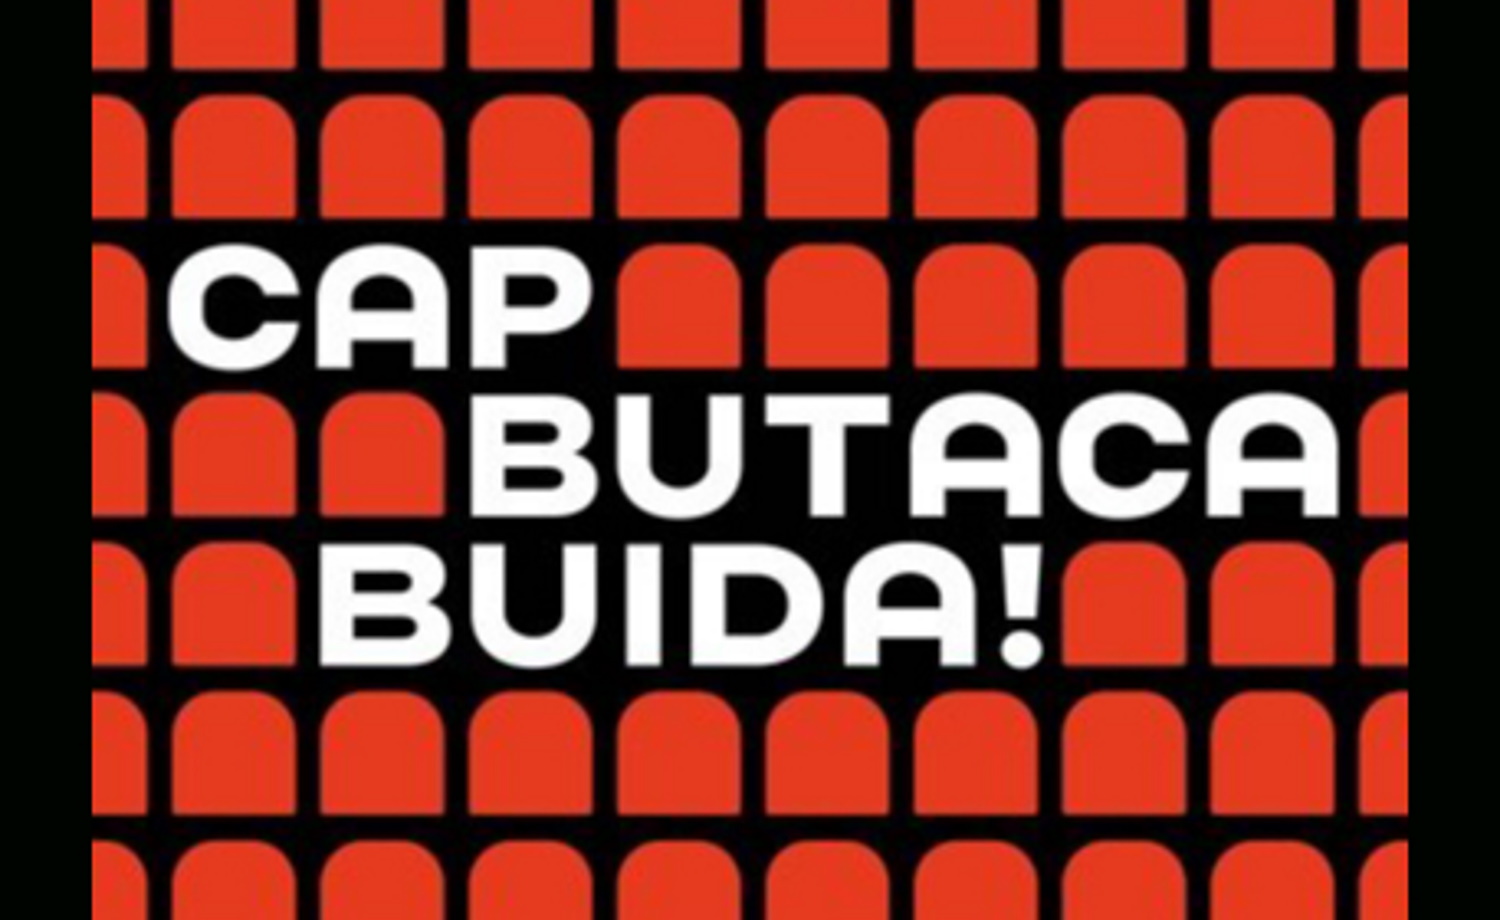 «Cap Butaca Buida» bate el récord de ocupación teatral en Cataluña